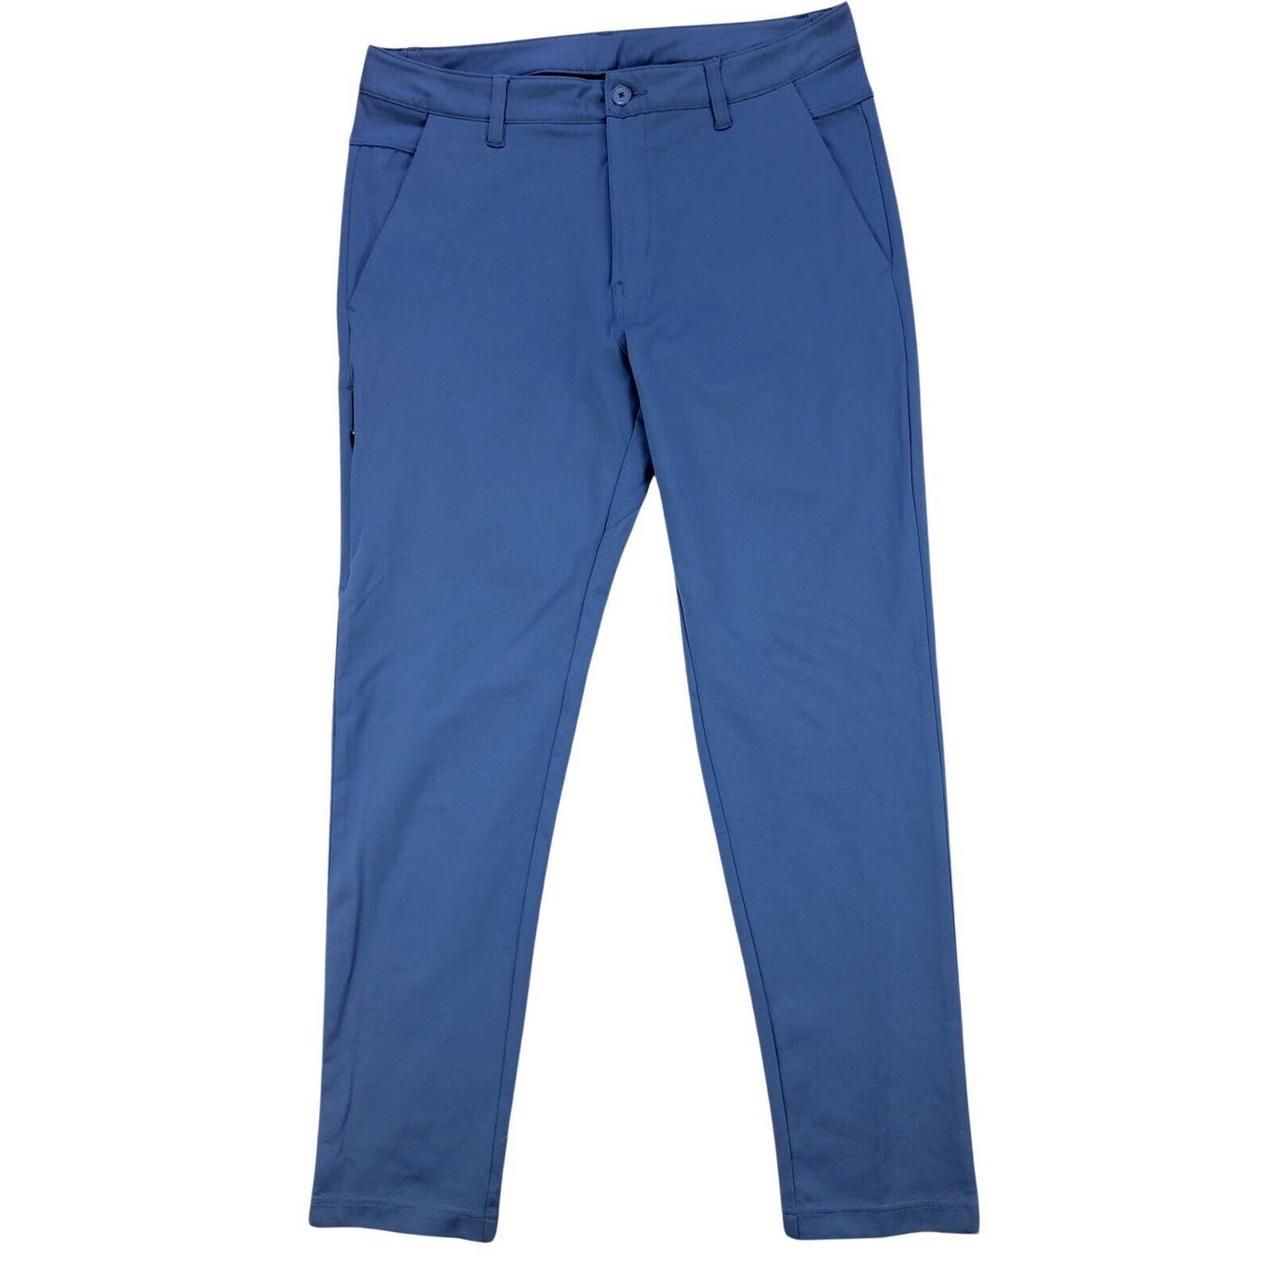 BYLT Everyday Pants 2.0 Mens Large (34x30) Blue... - Depop